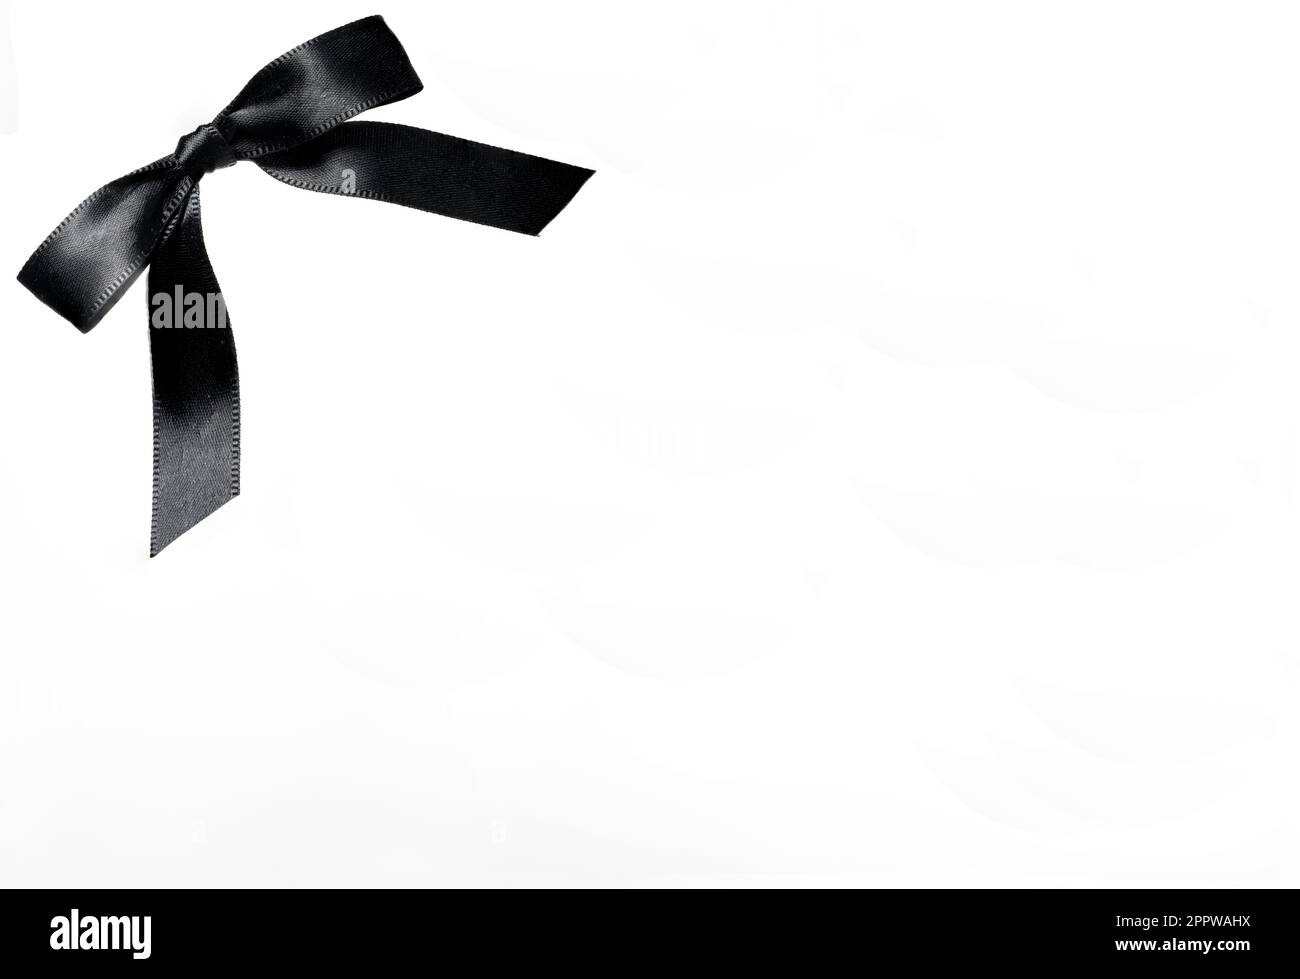 Concolence concept avec Noble Black mesh Loop brillant large ruban sur fond blanc signifie perte décès funéraire Condolence Grief perte funéraire Banque D'Images